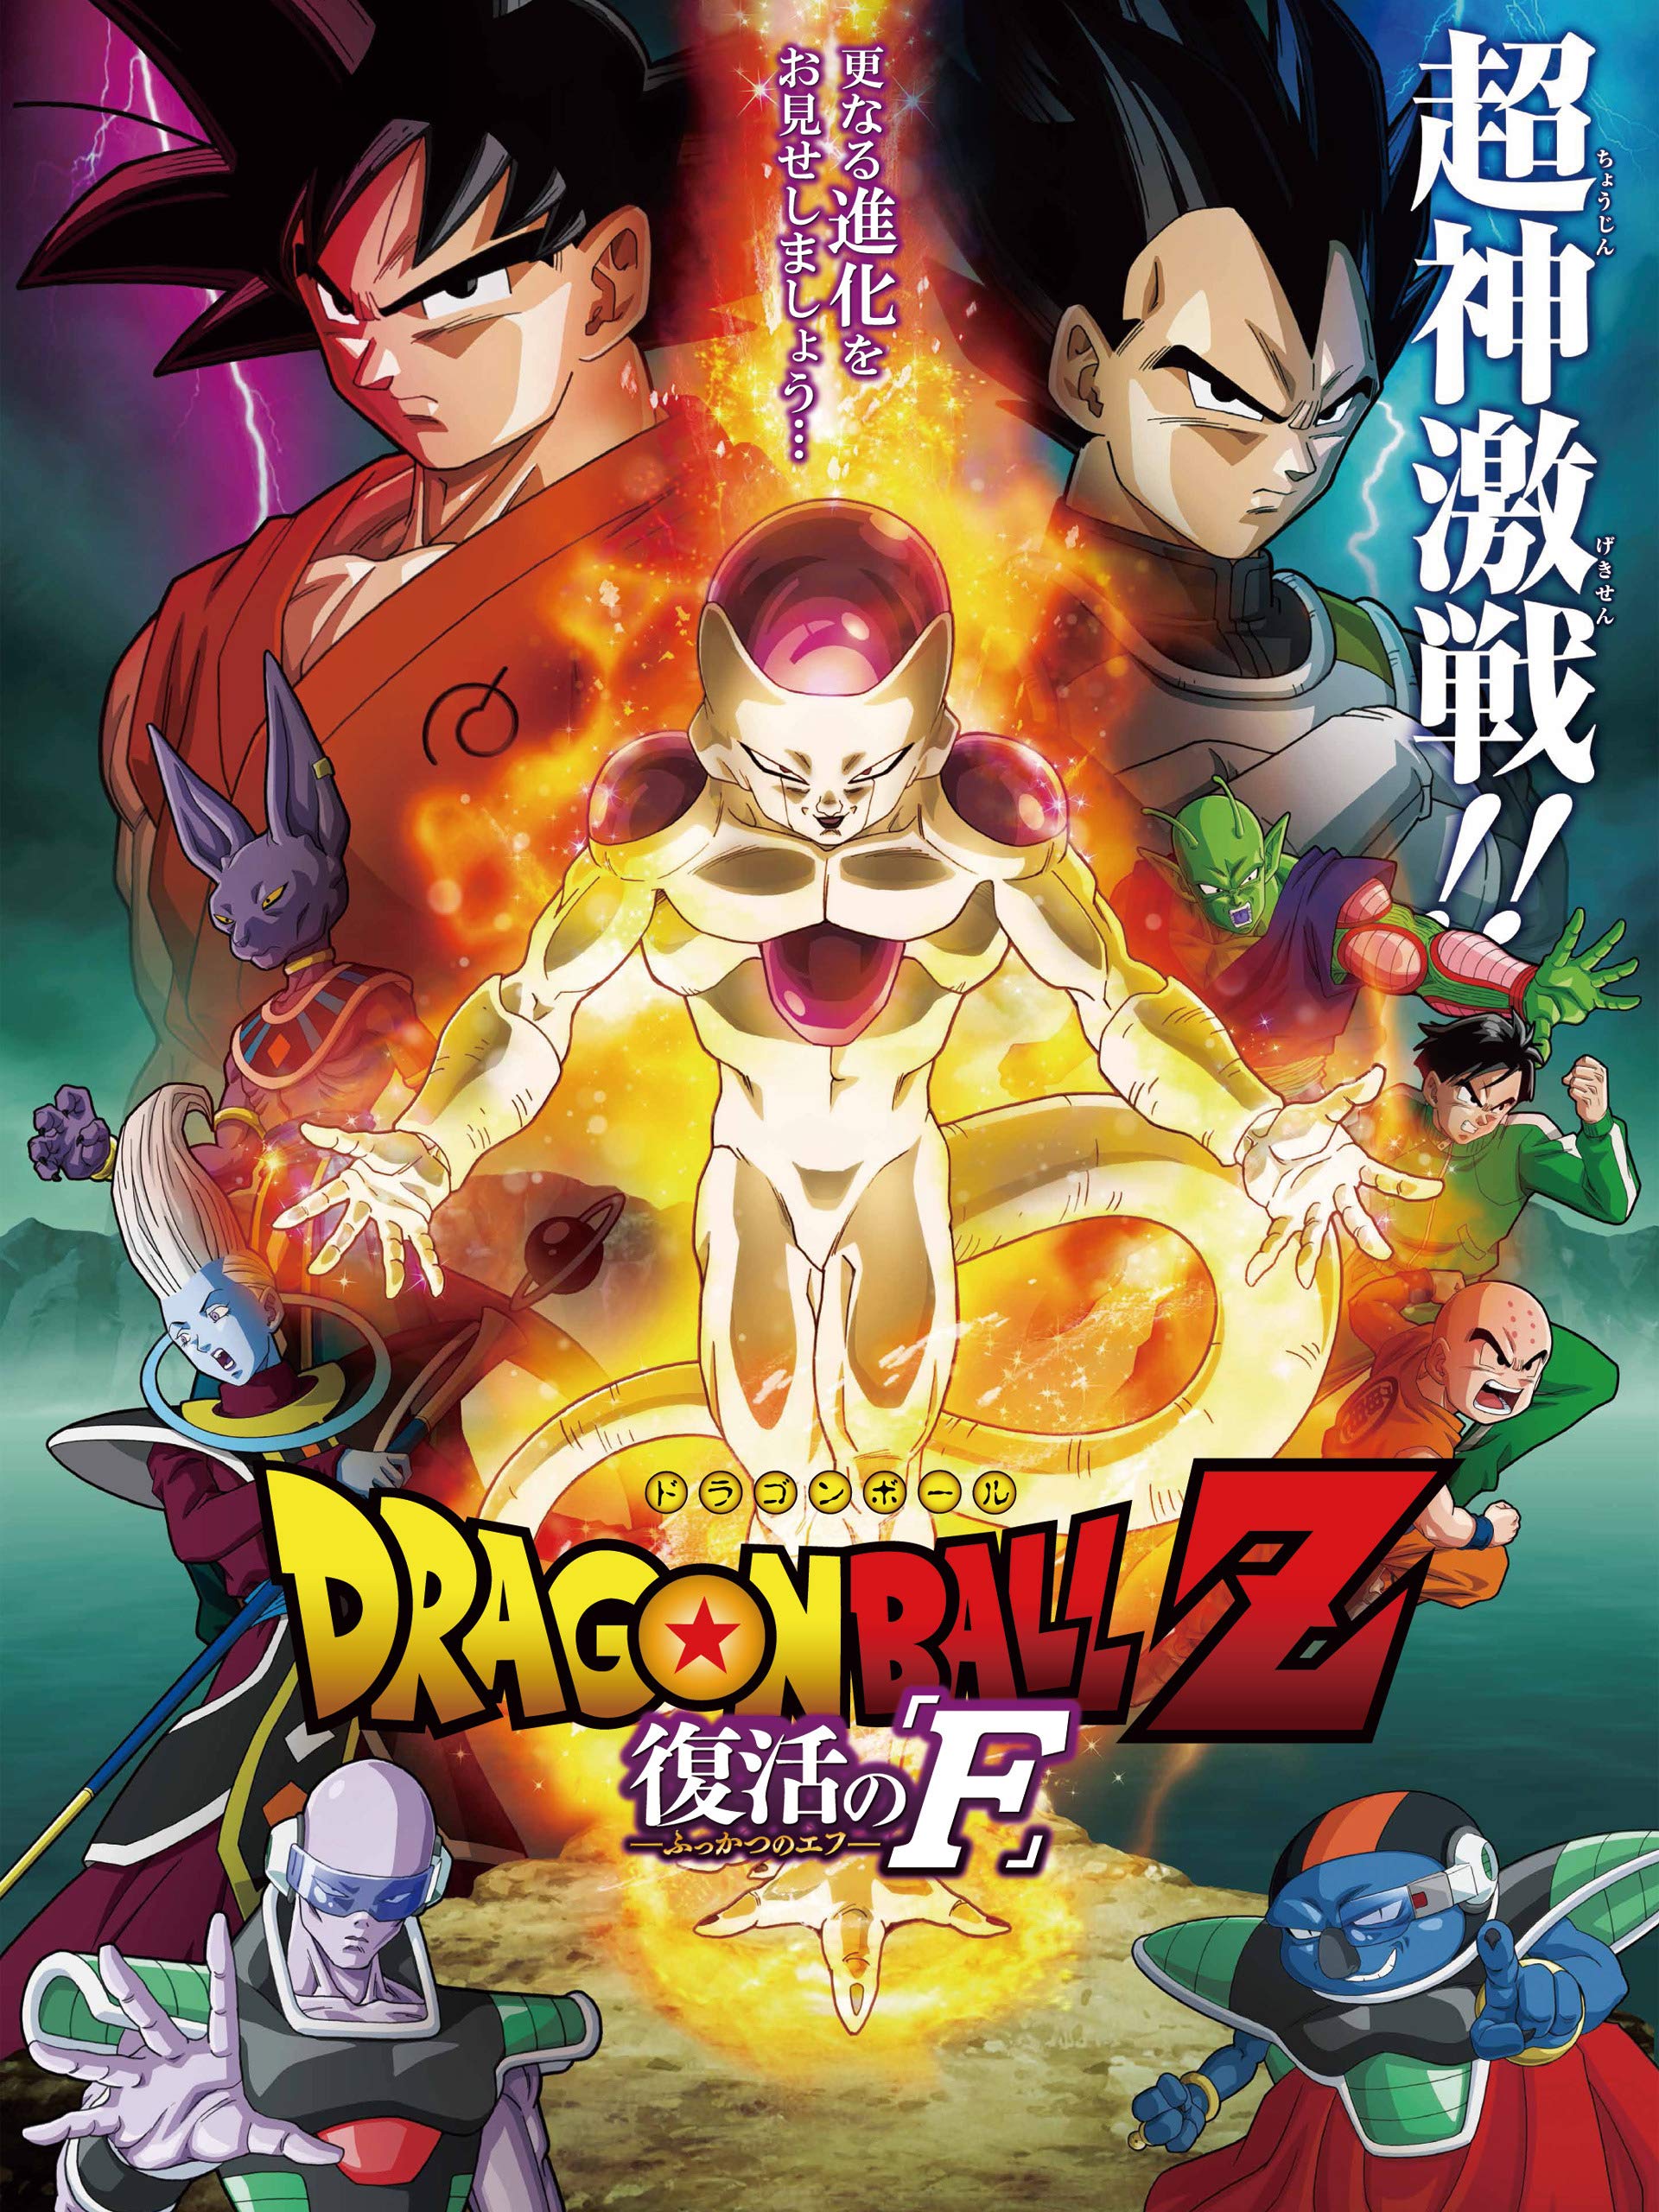 Dragon Ball Z Resurrection F 2015   IMDb